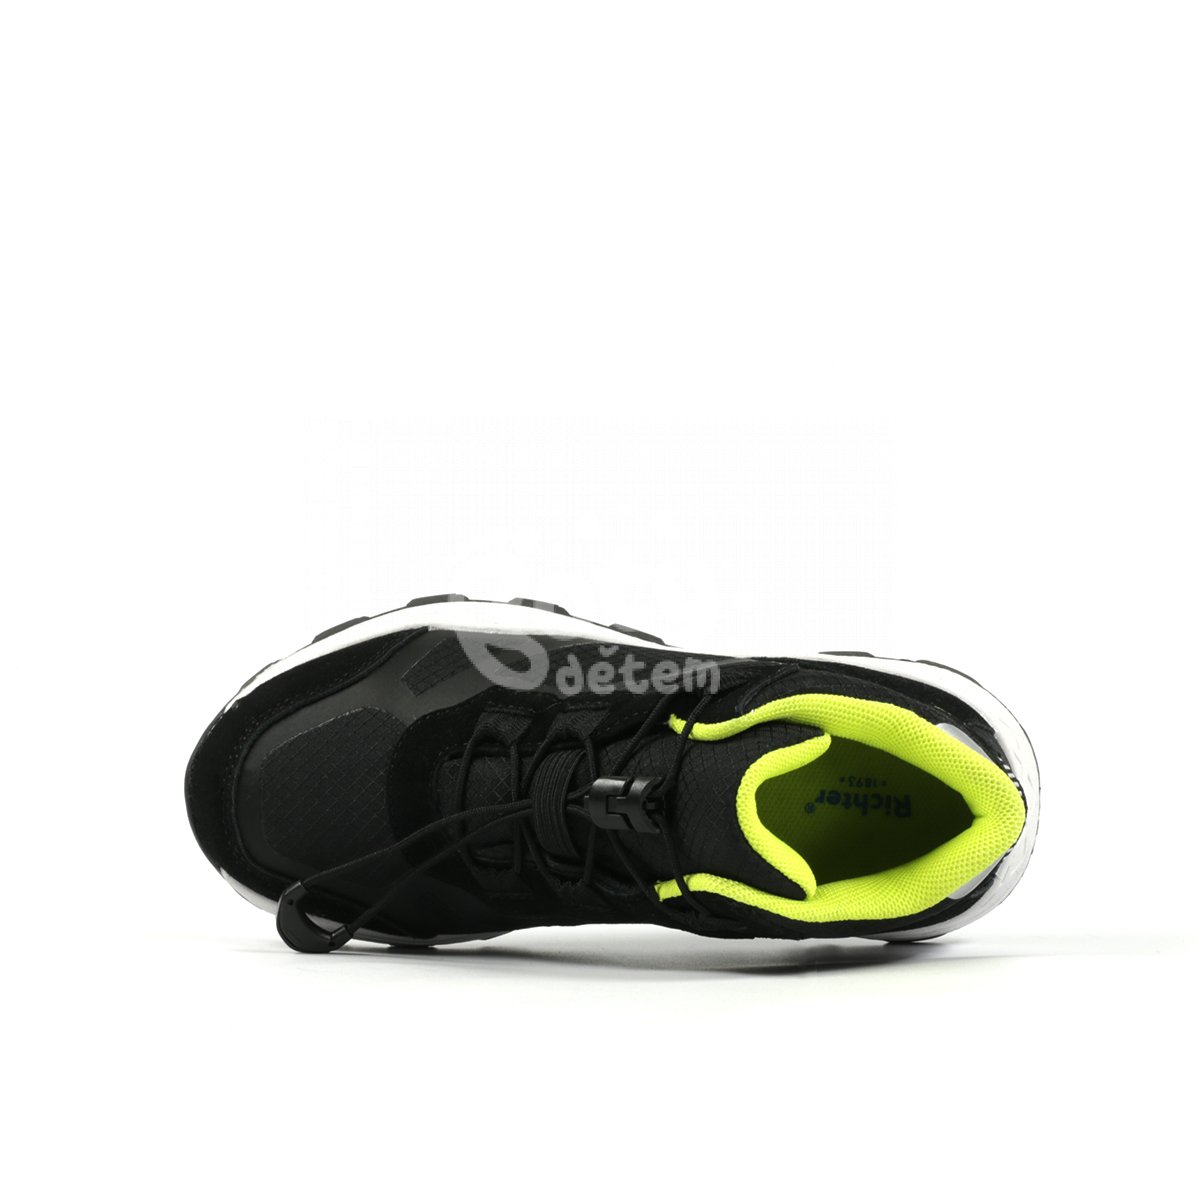 Sportovní obuv Richter Venture 7451-6192-9900 černá